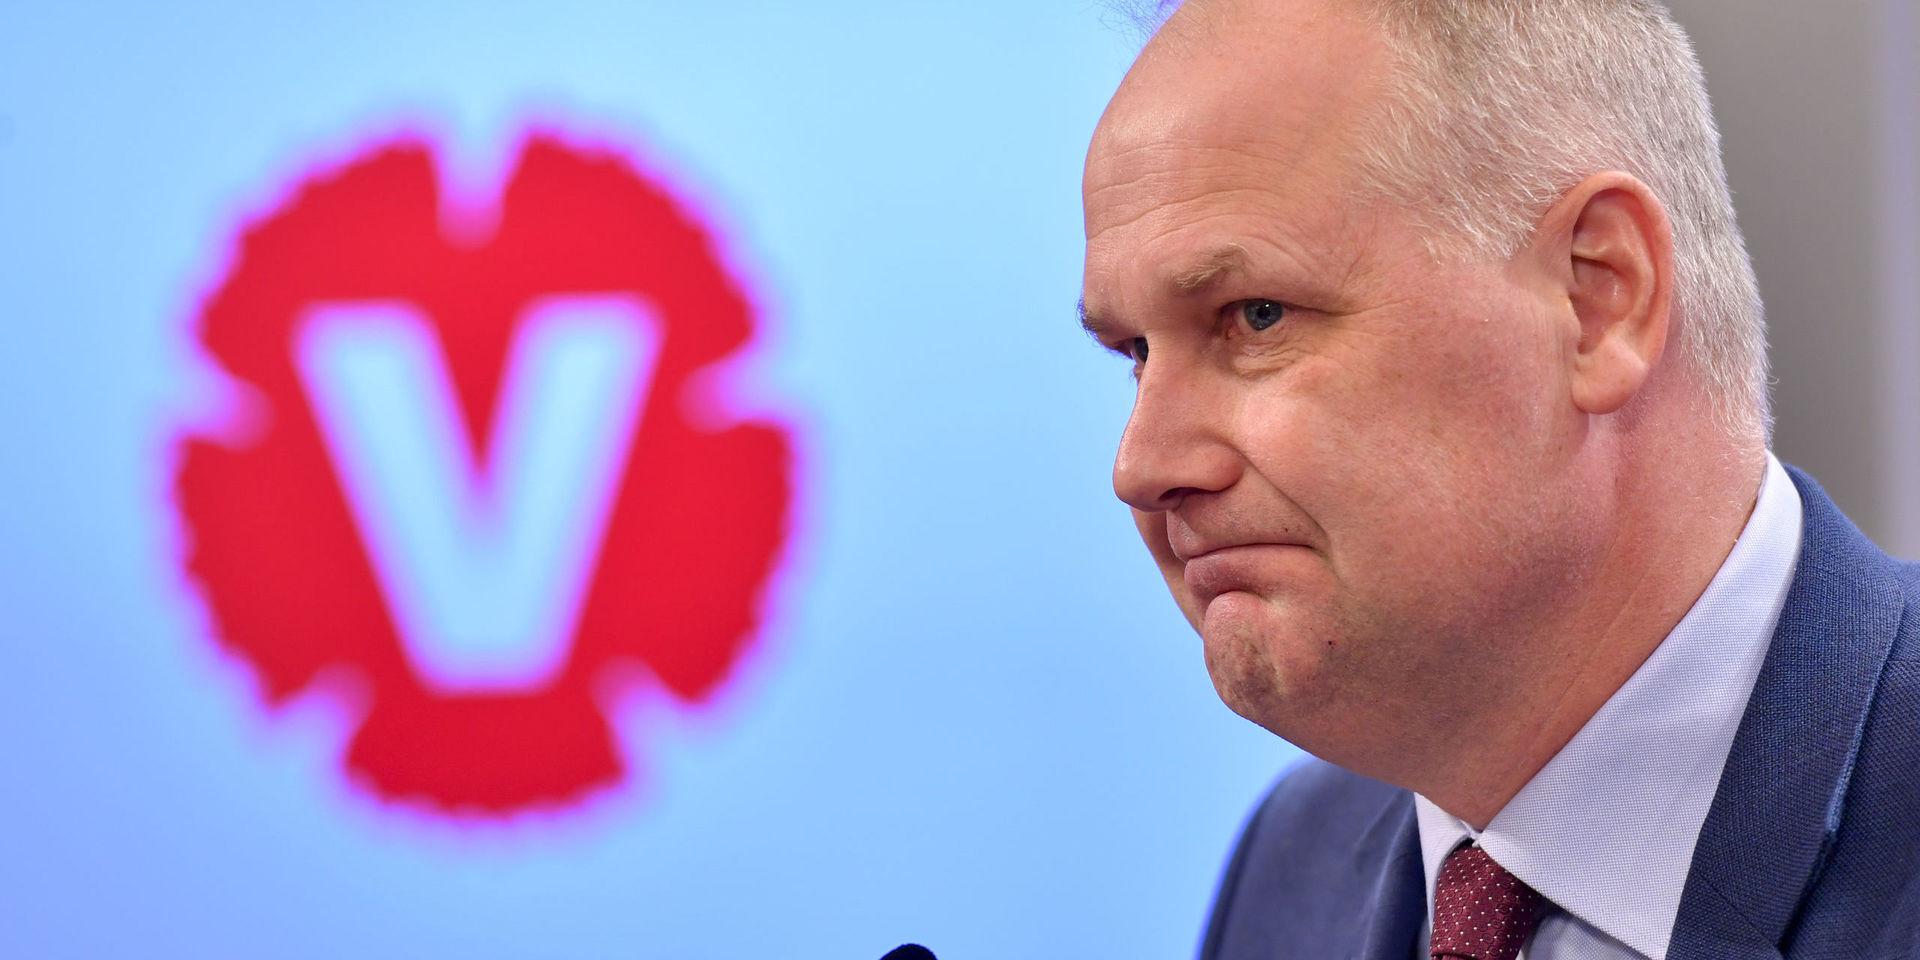 Vänsterpartiets partiledare Jonas Sjöstedt håller pressträff. Foto: Henrik Montgomery / TT